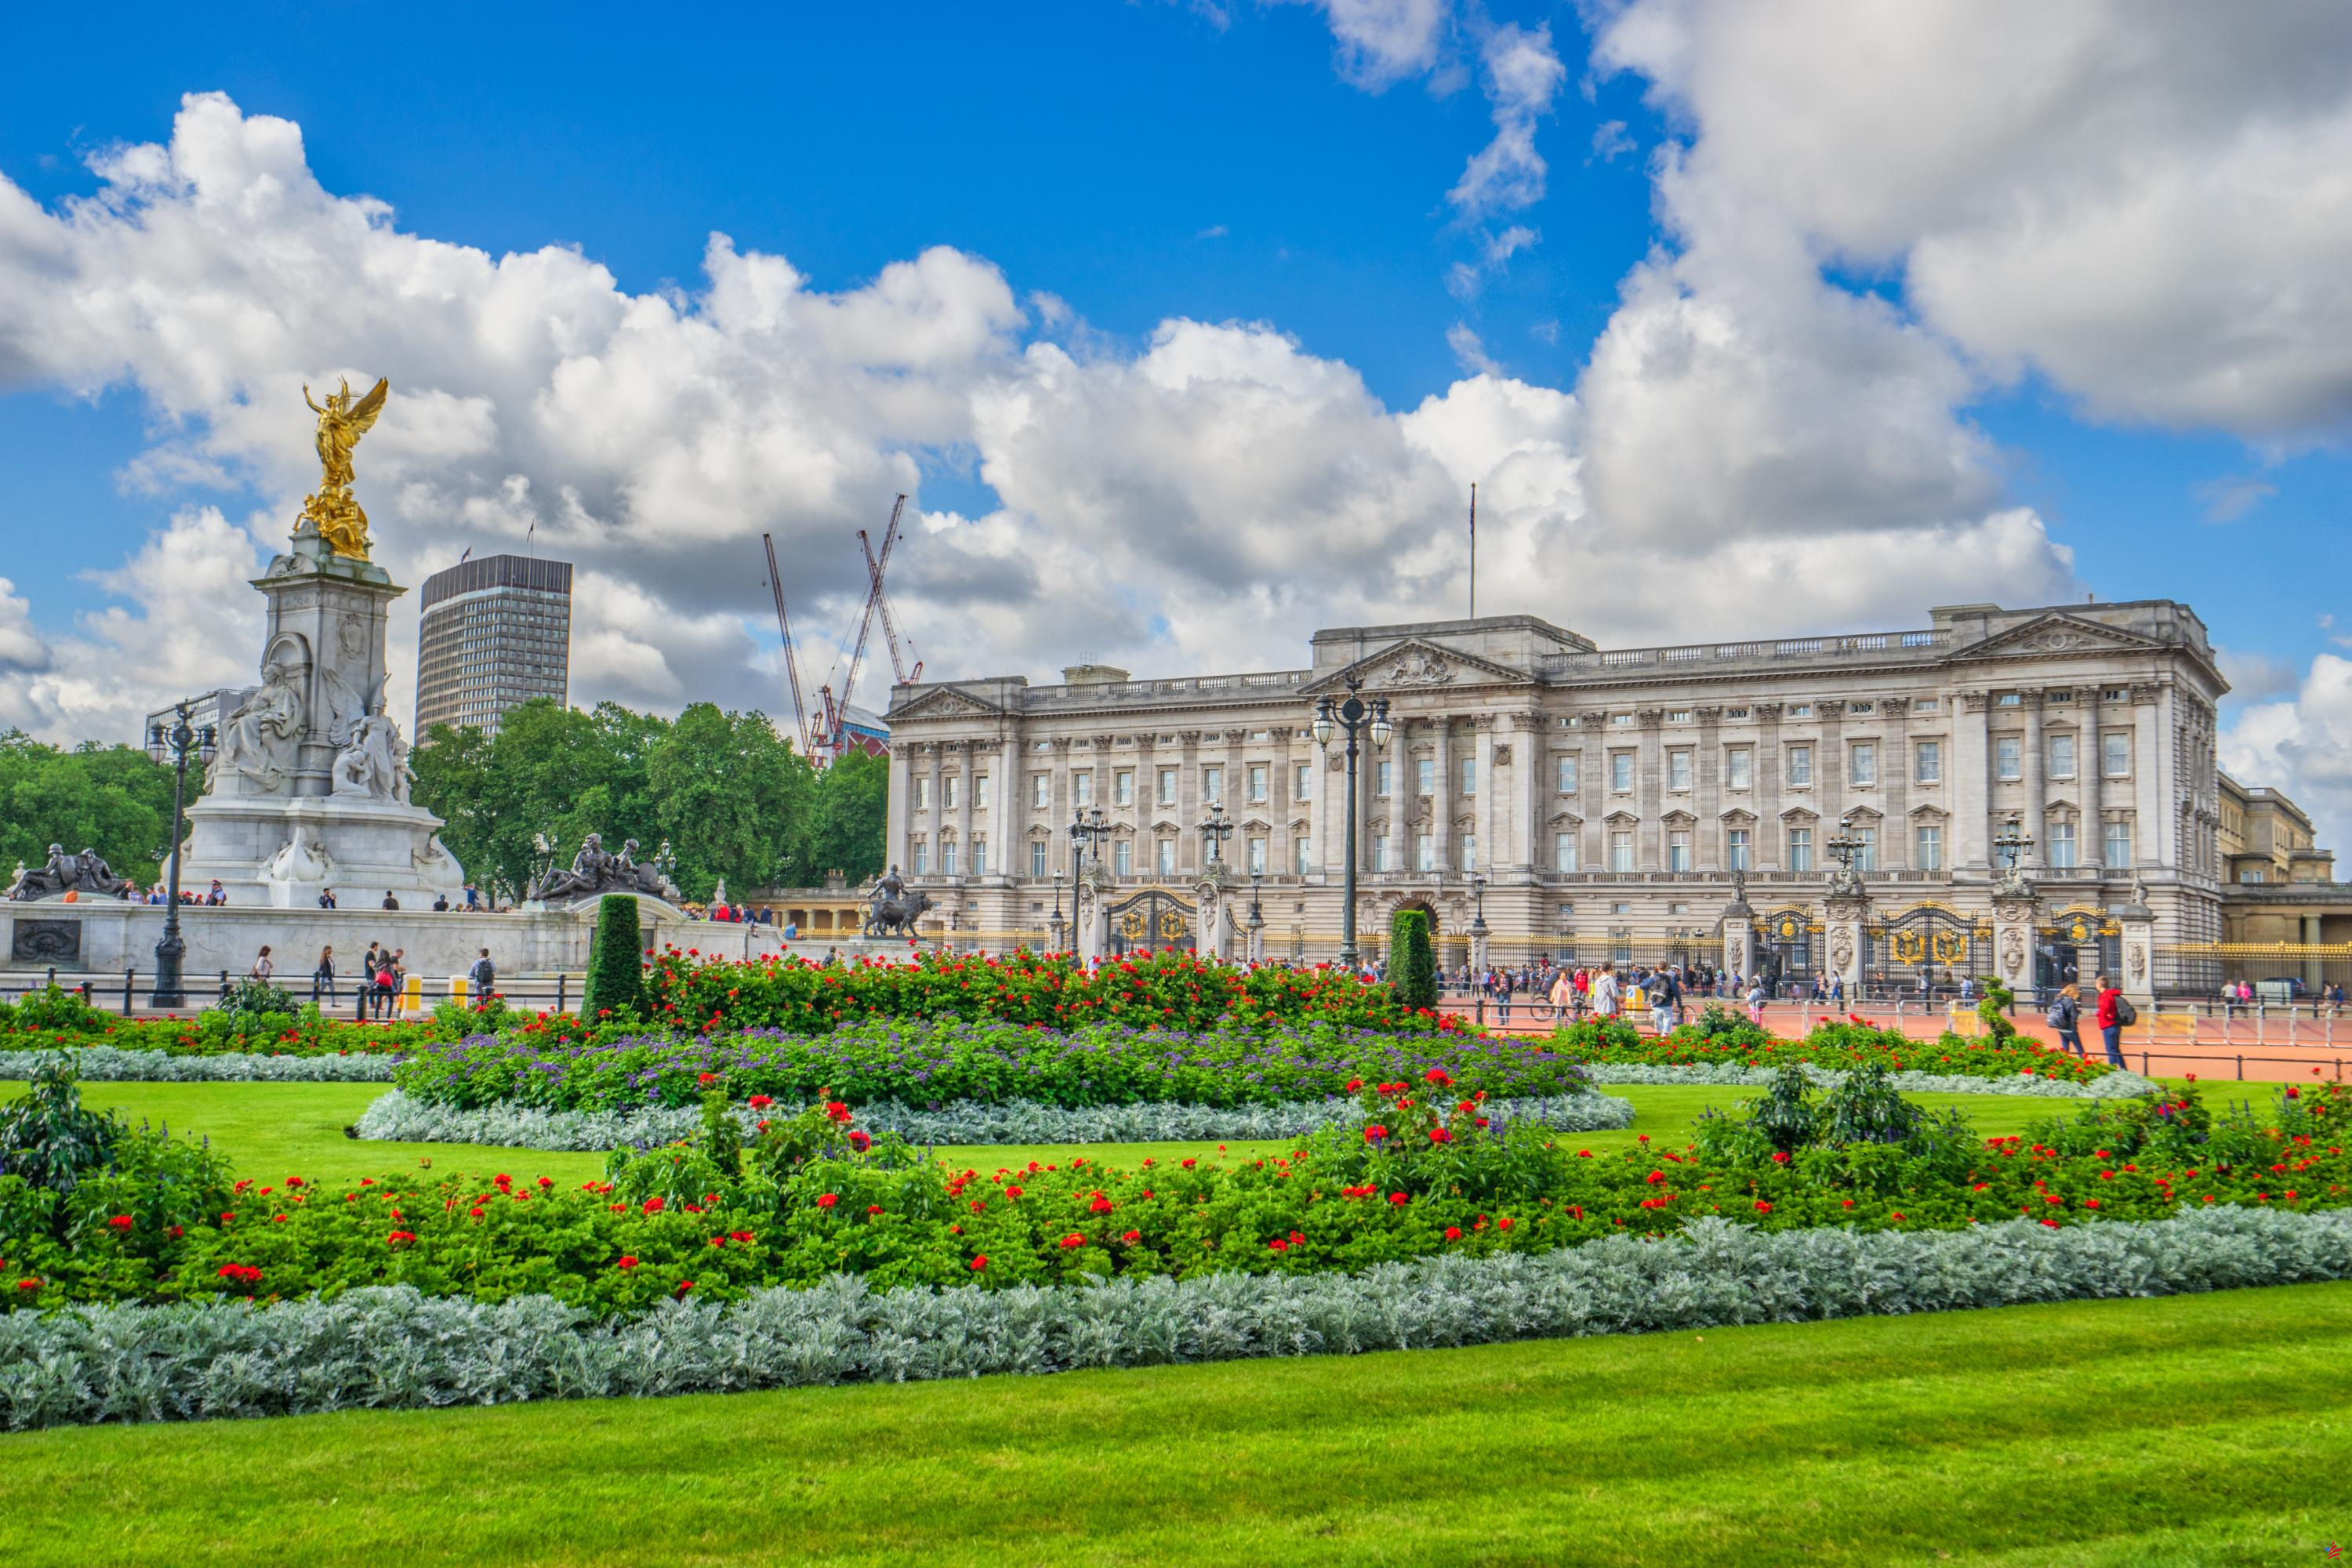 Inauguración de Balmoral, nuevas visitas a Buckingham... Cómo se beneficia la familia real británica del turismo